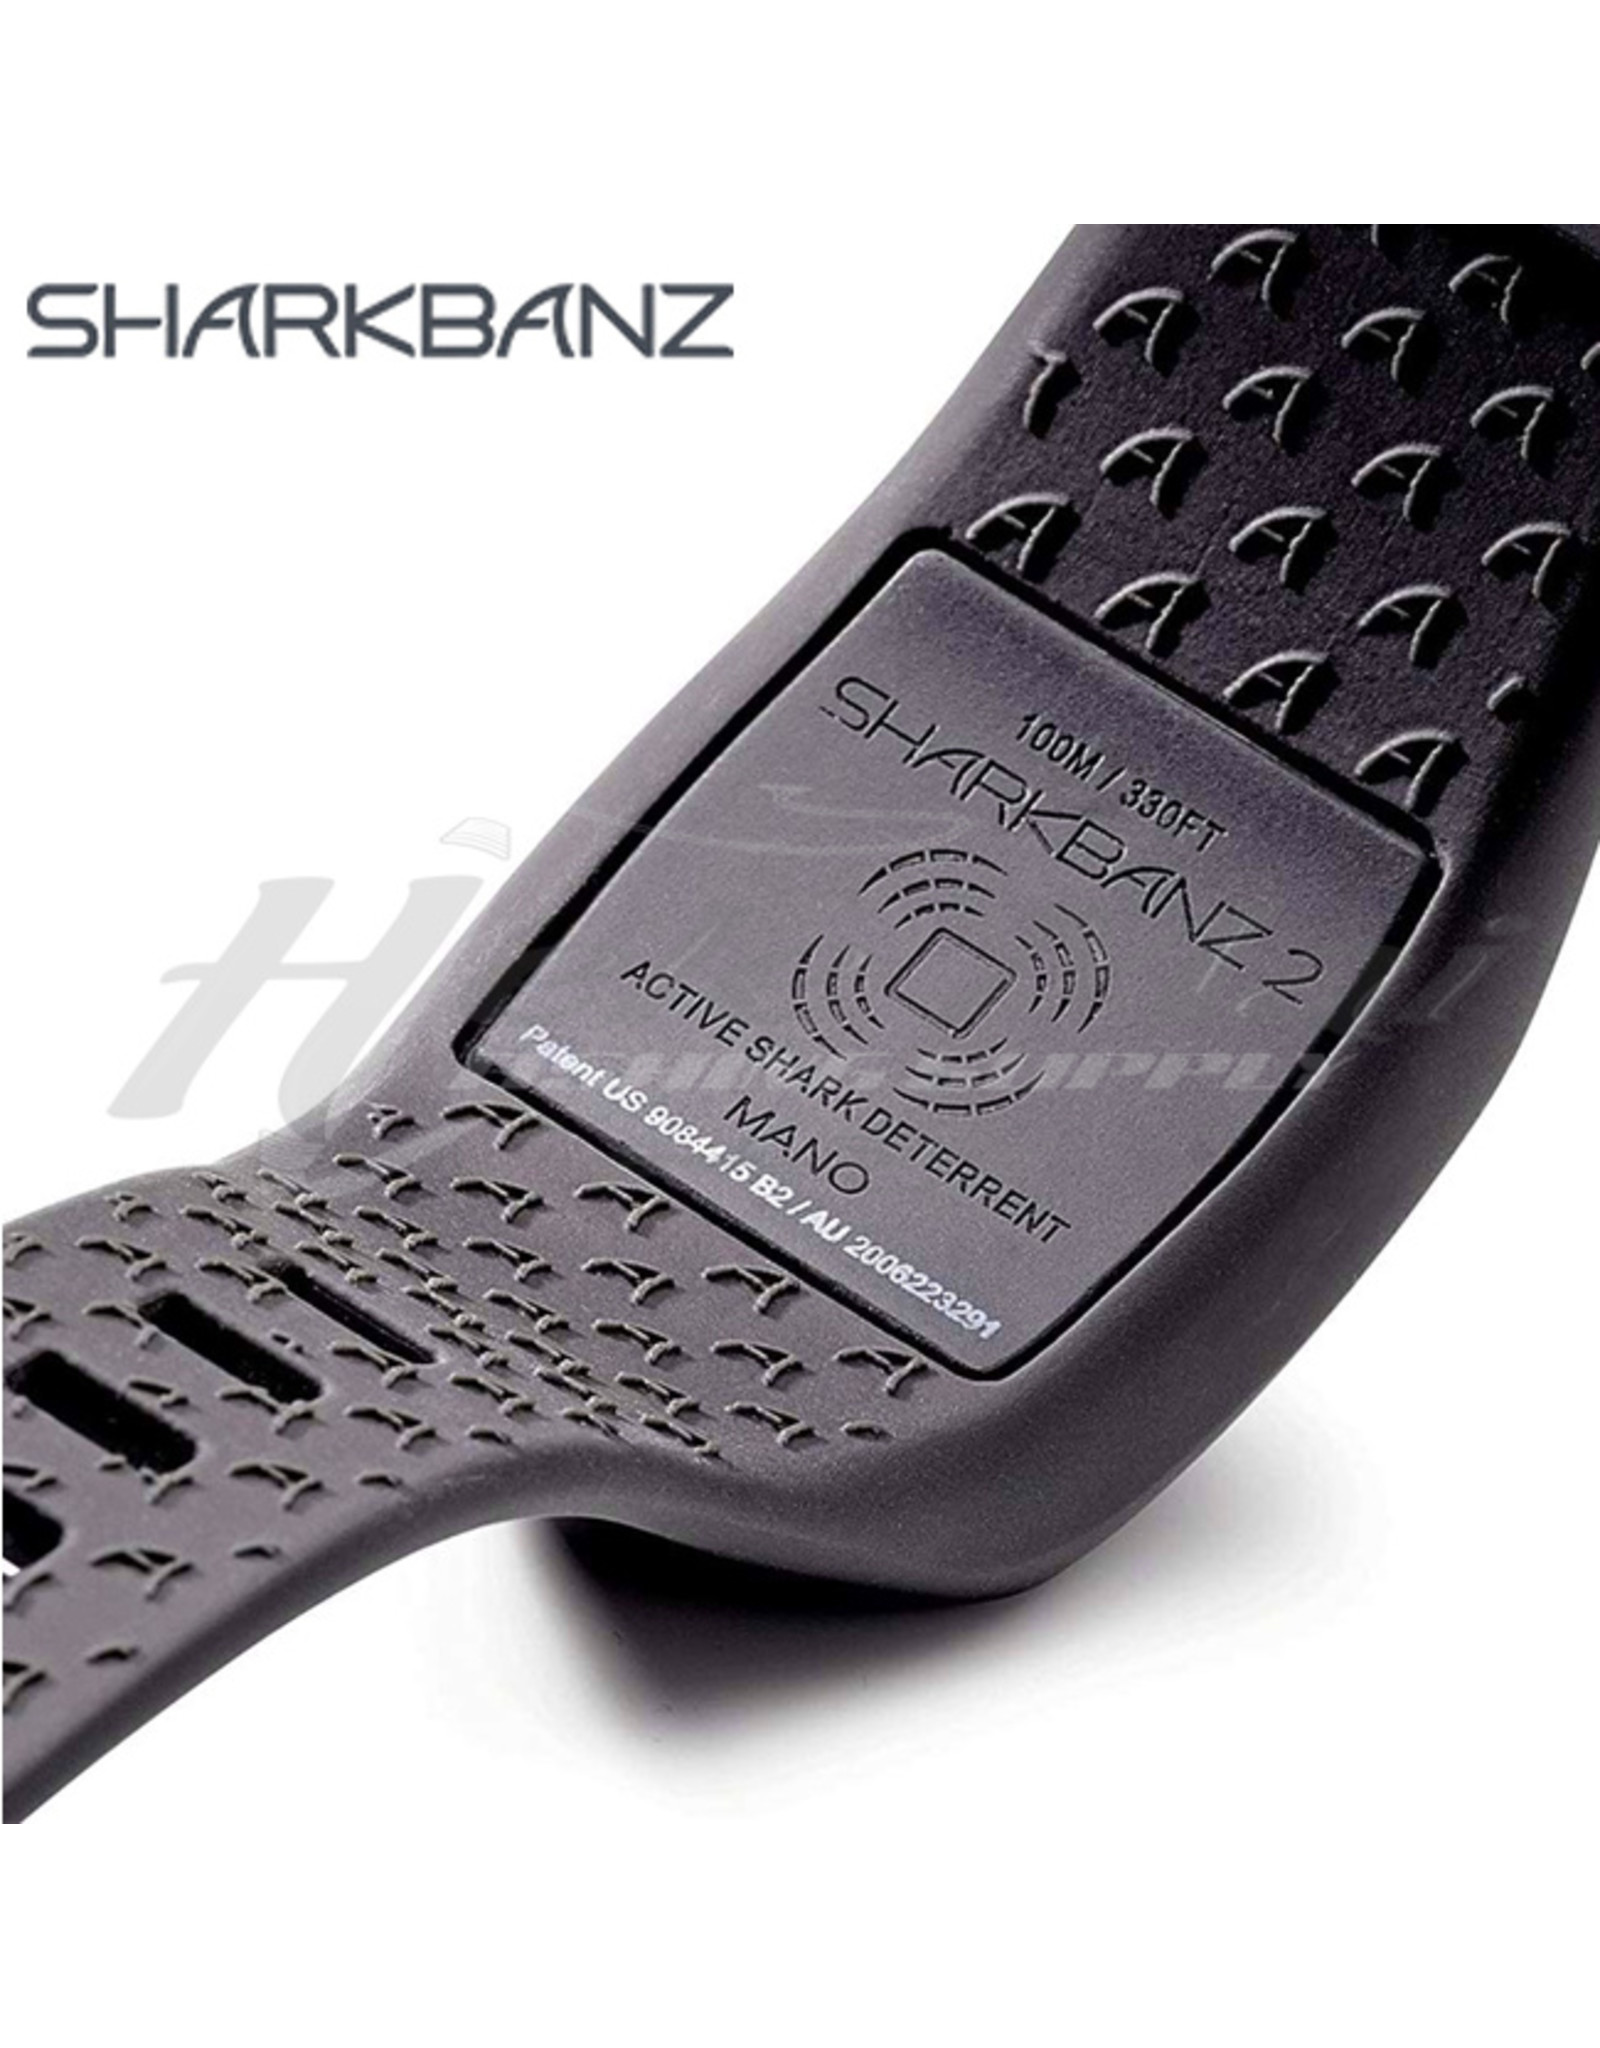 SHARKBANZ SHARKBANZ, ACTIVE SHARK DETERRANT BAND SLATE/BLACK